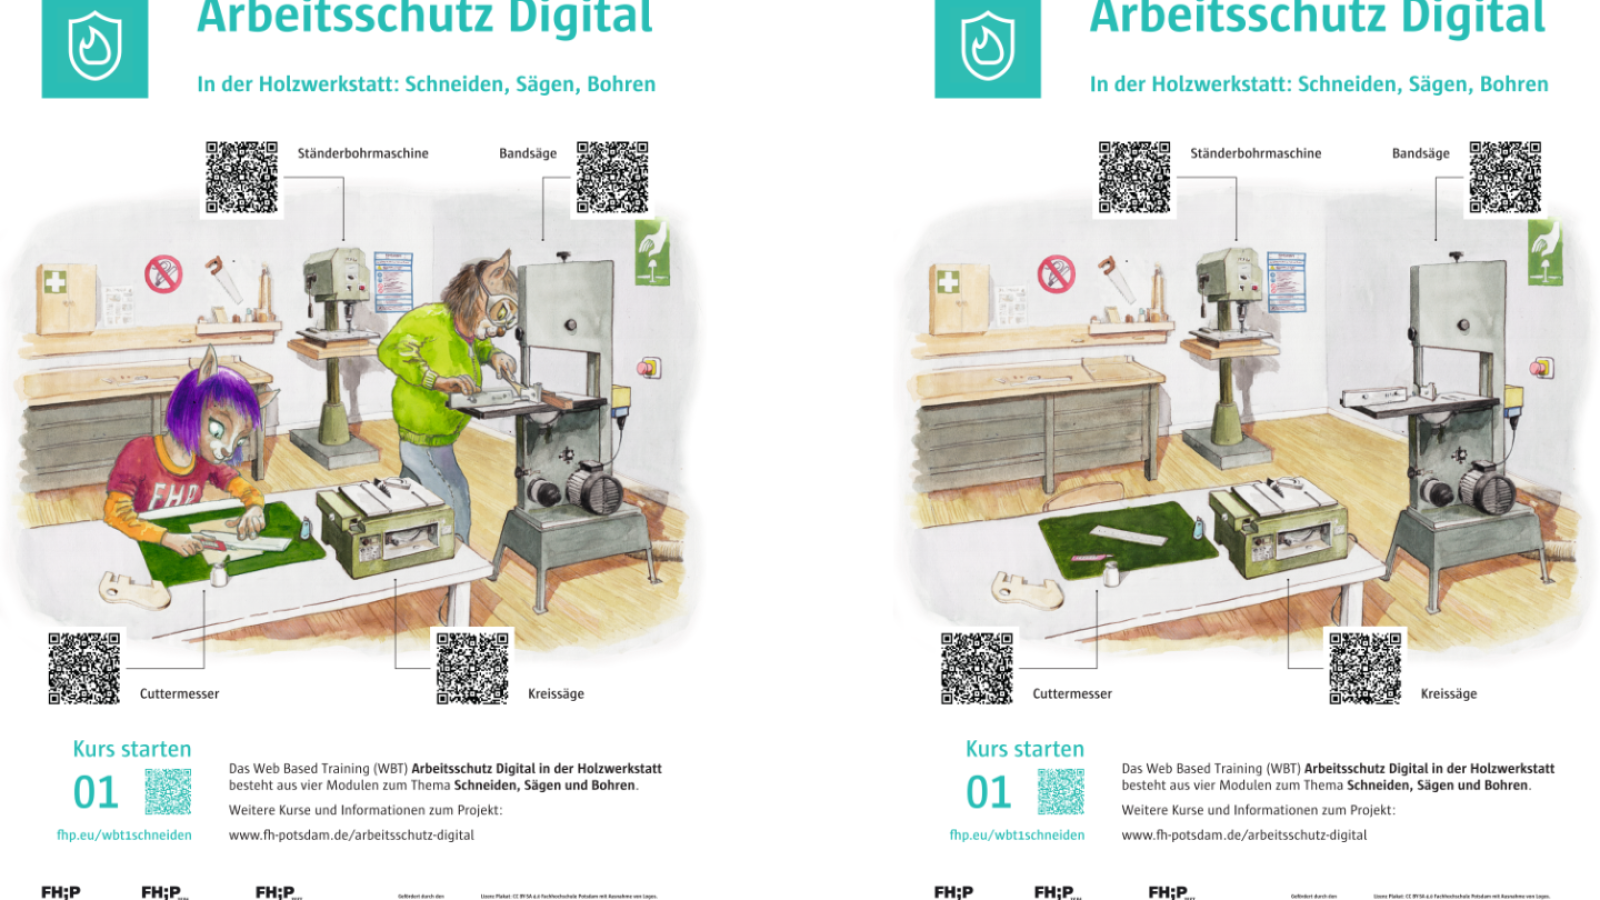 Gegenüberstellung der 2 interaktiven Plakatversionen zu den Arbeitschutzthemen Schneiden, Sägen, Bohren.